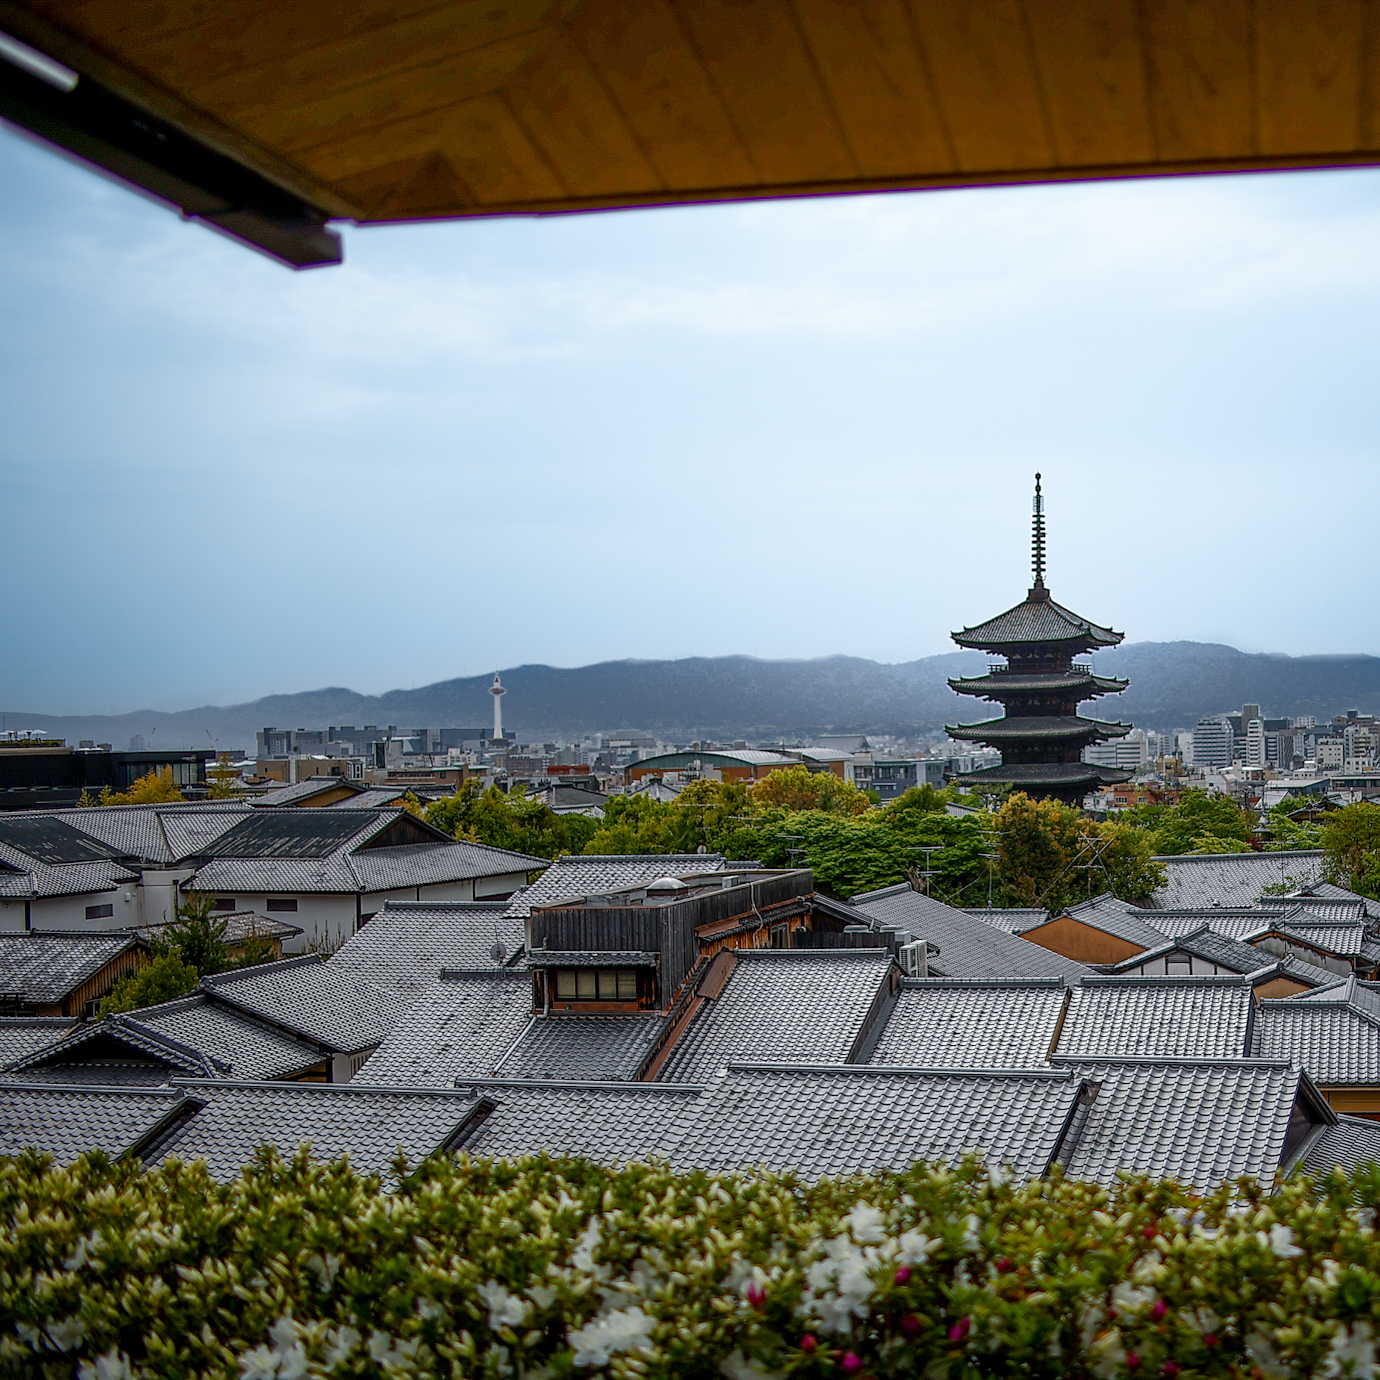 ホテルからは京都らしい眺望も楽しめる。